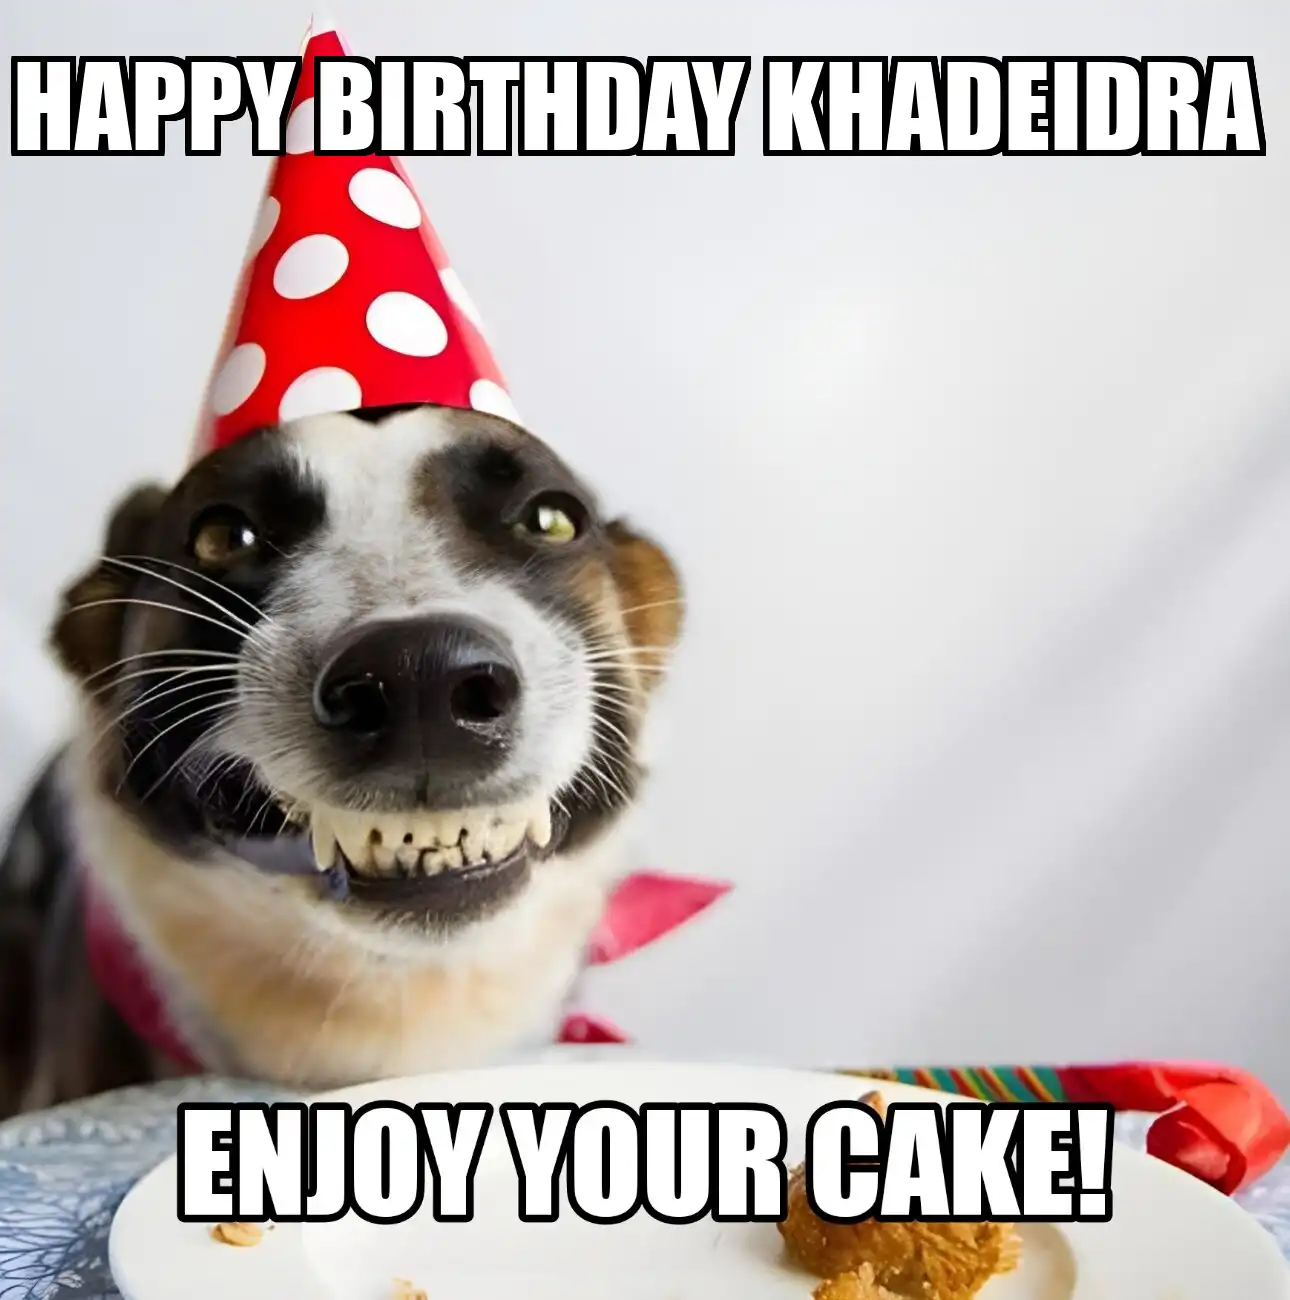 Happy Birthday Khadeidra Enjoy Your Cake Dog Meme